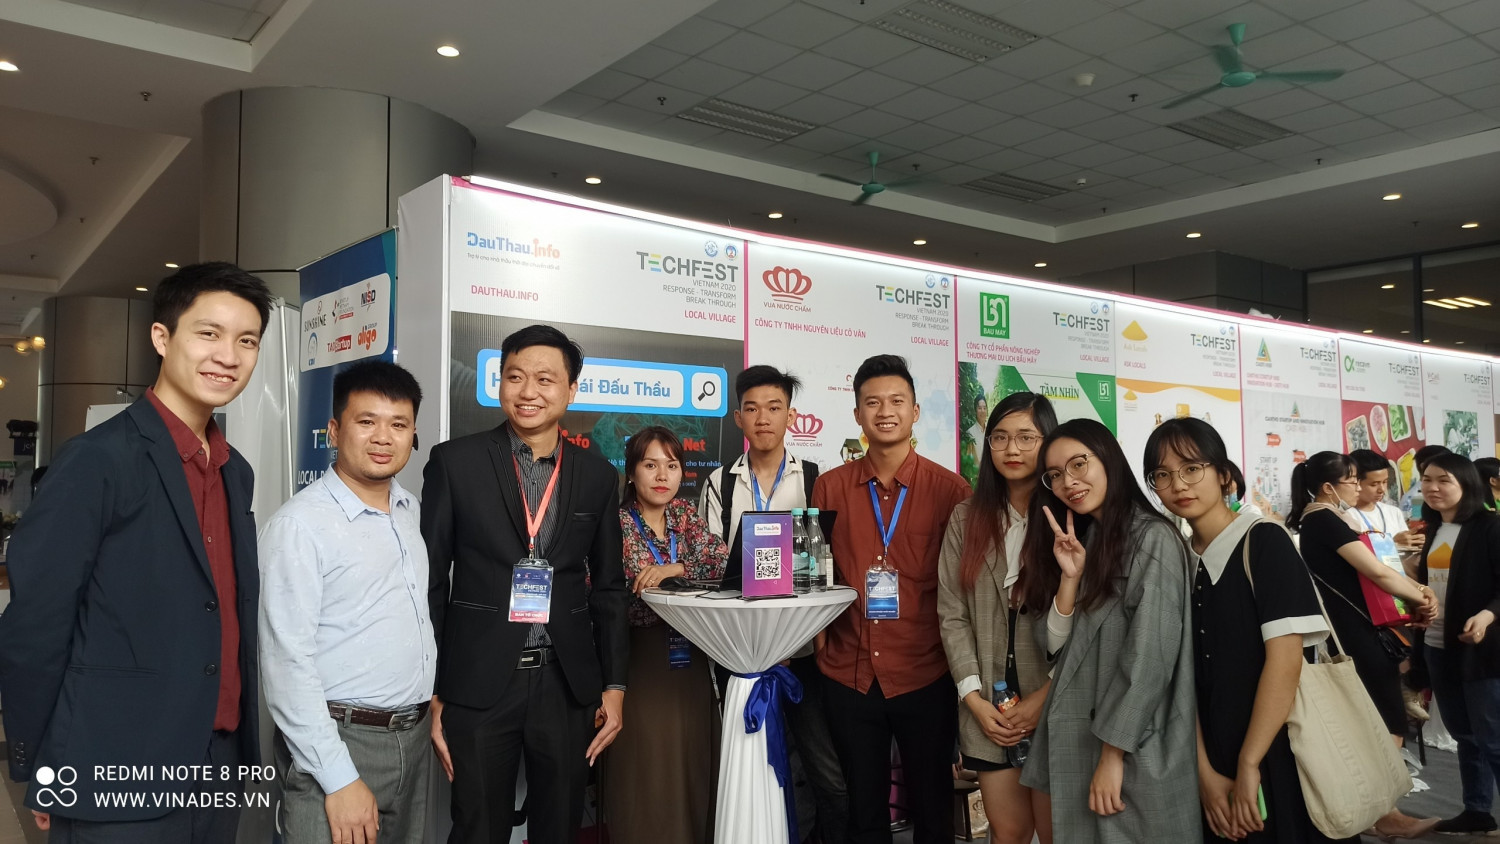 DauThau info (dự án startup của Công ty VINADES) lọt TOP 60 dự án startup của Techfest 2020